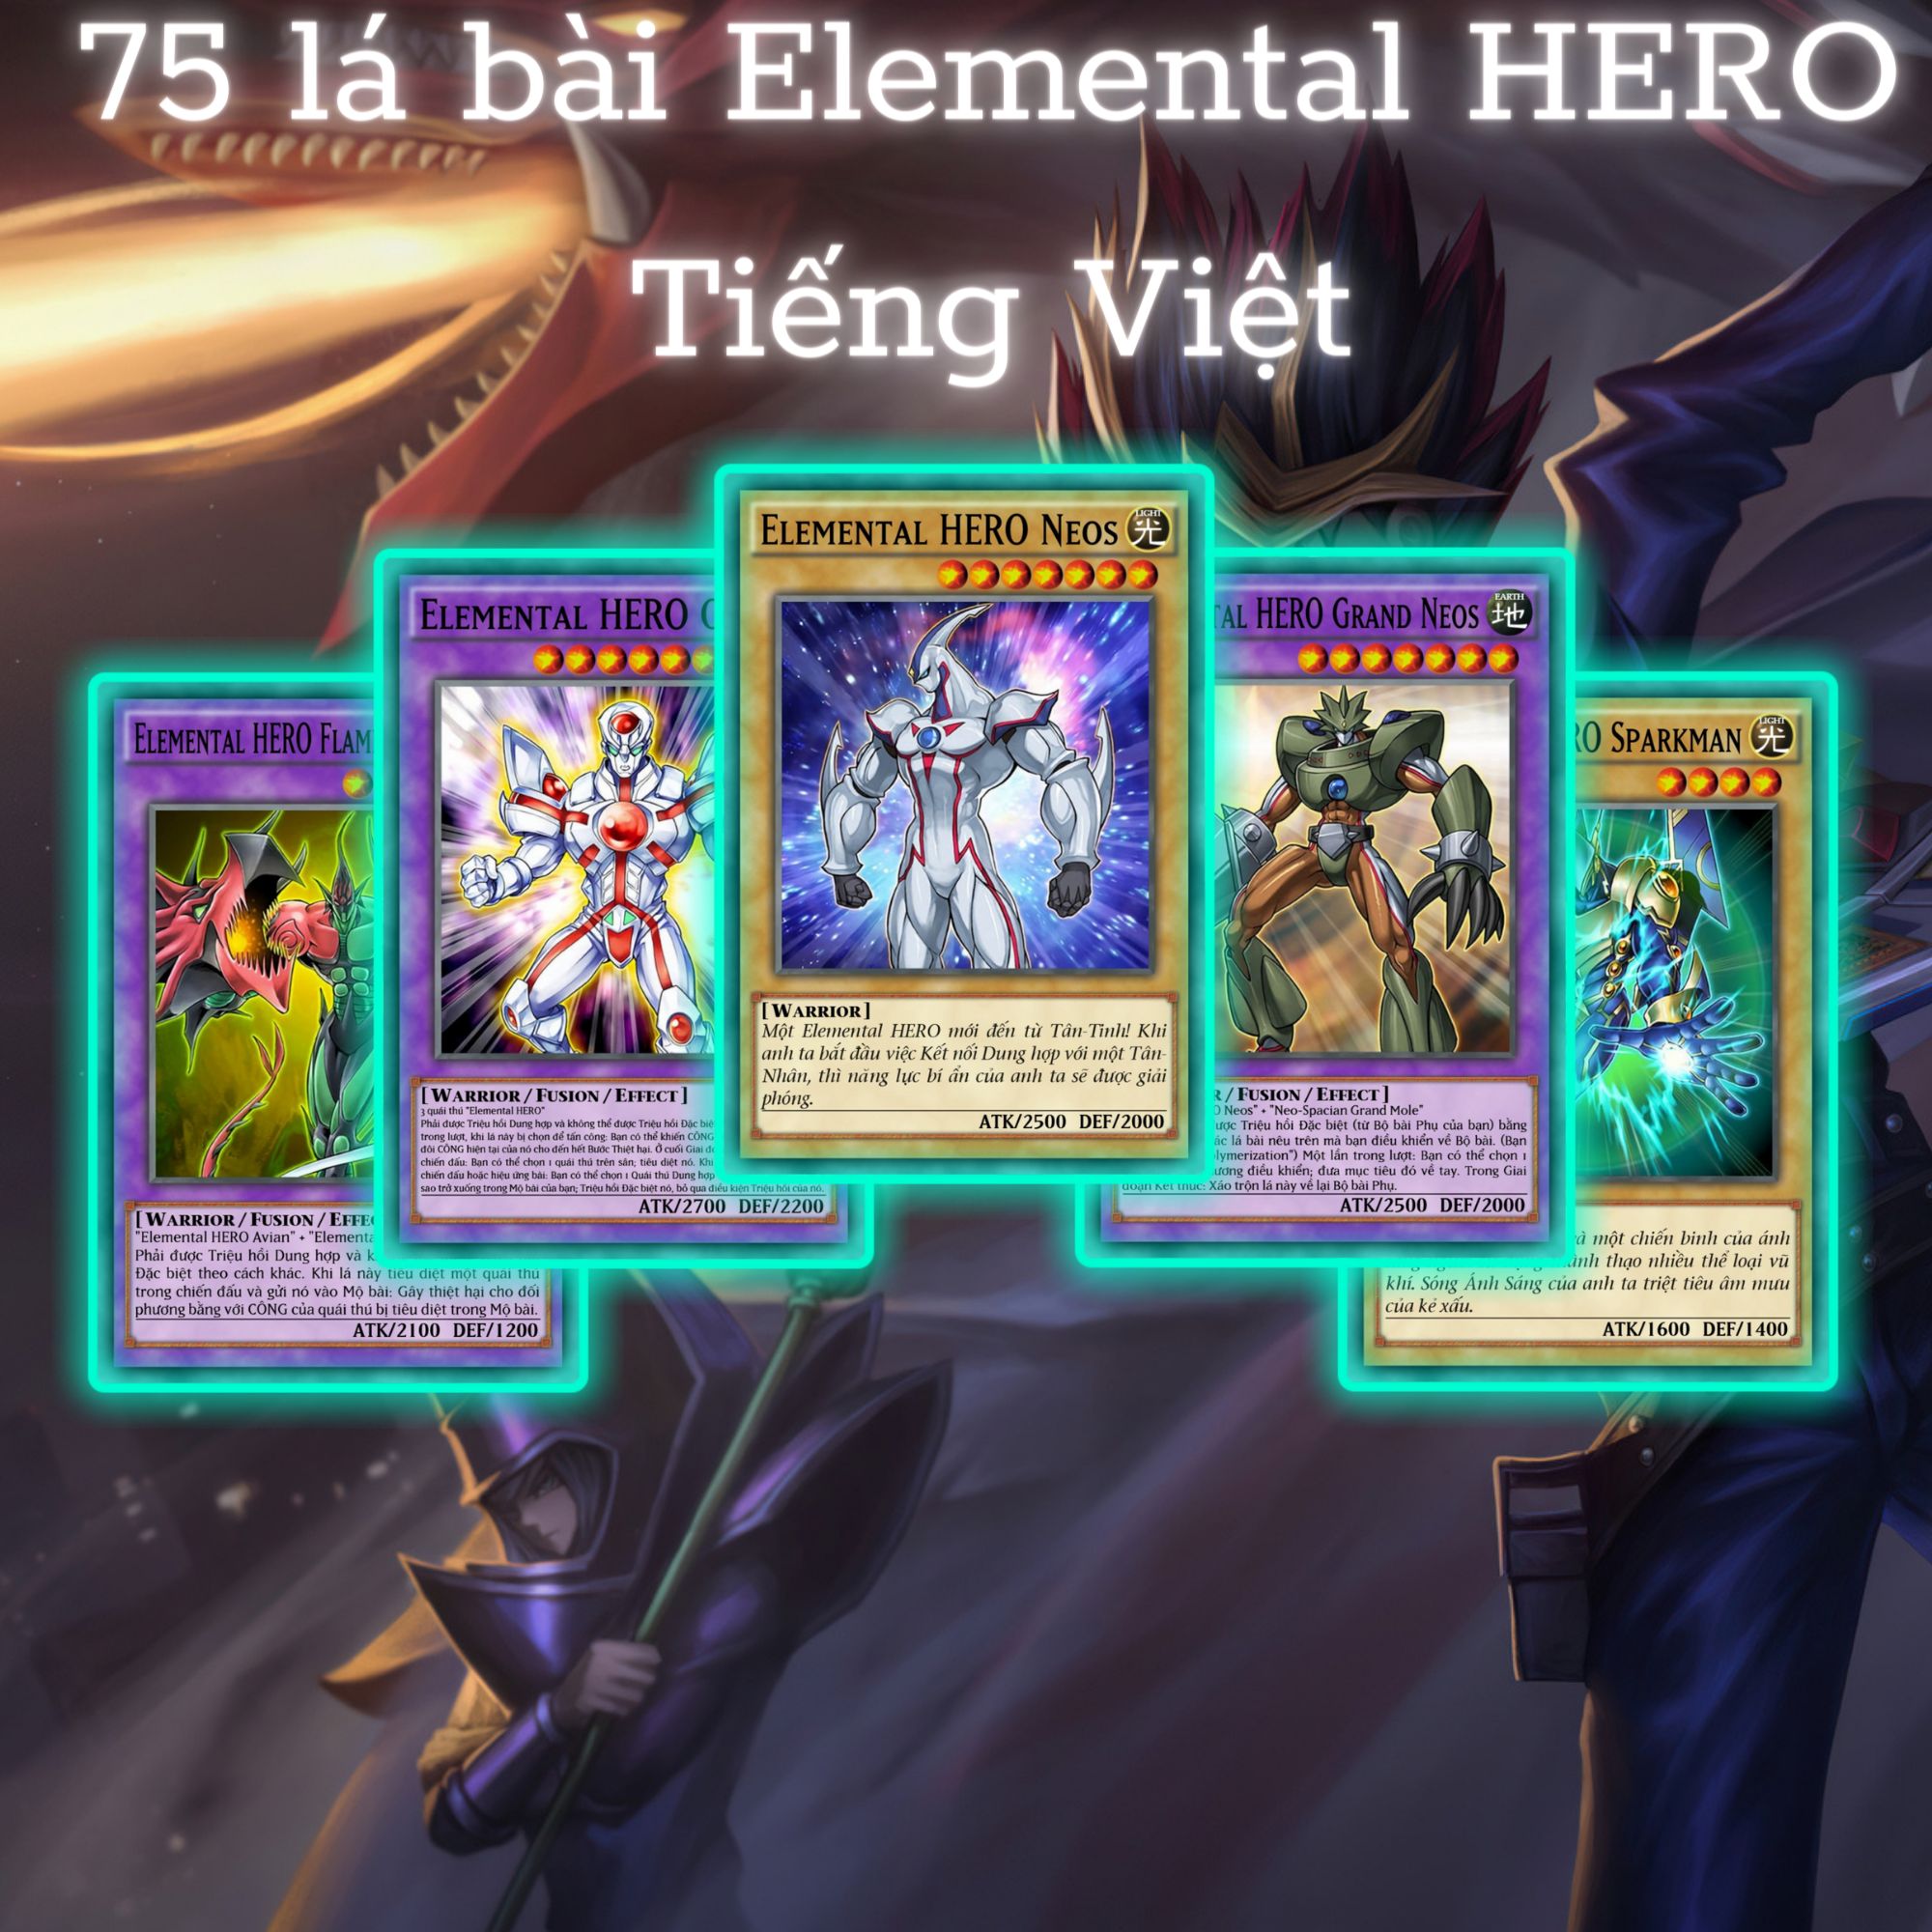 Bài Yugioh TIẾNG VIỆT - Bộ bài Elemental HERO 75 lá